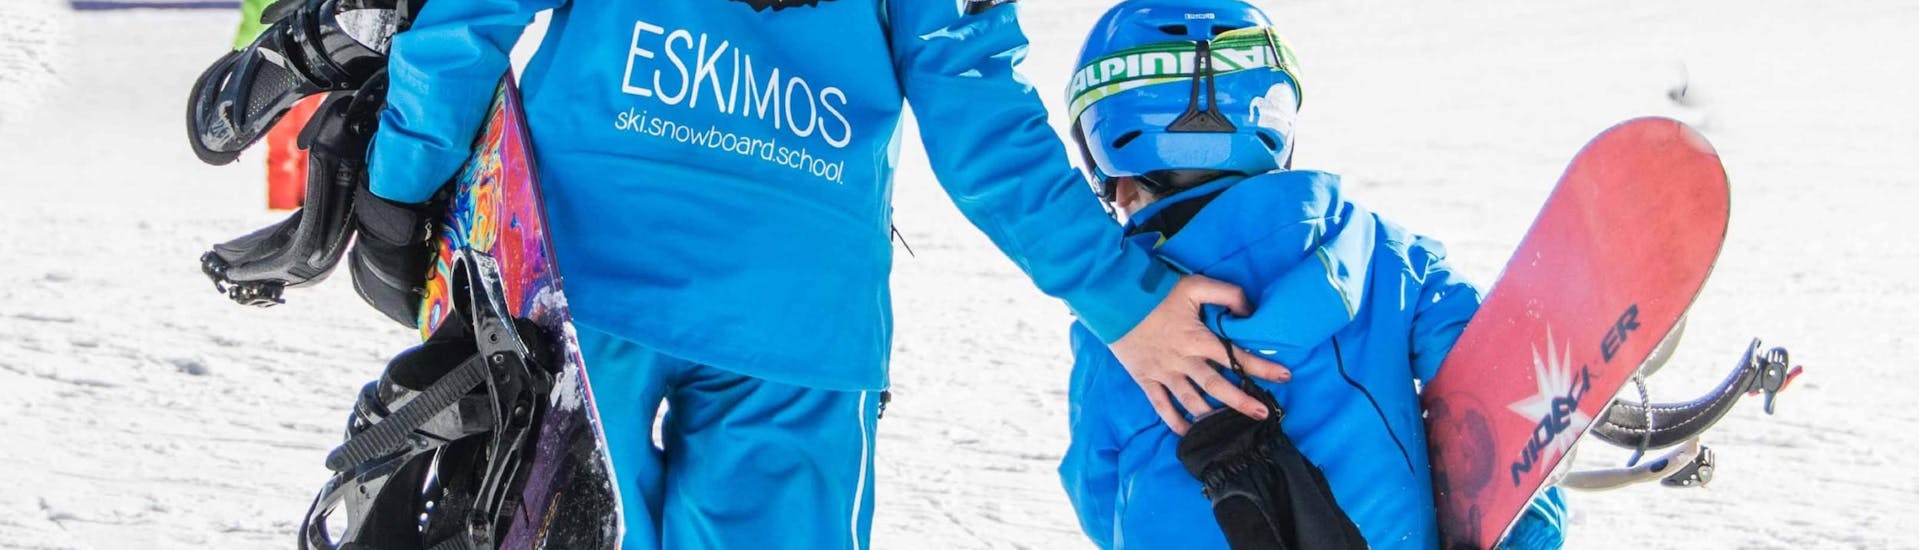 Cours de snowboard dès 6 ans - Premier cours avec Ski School ESKIMOS Saas-Fee.